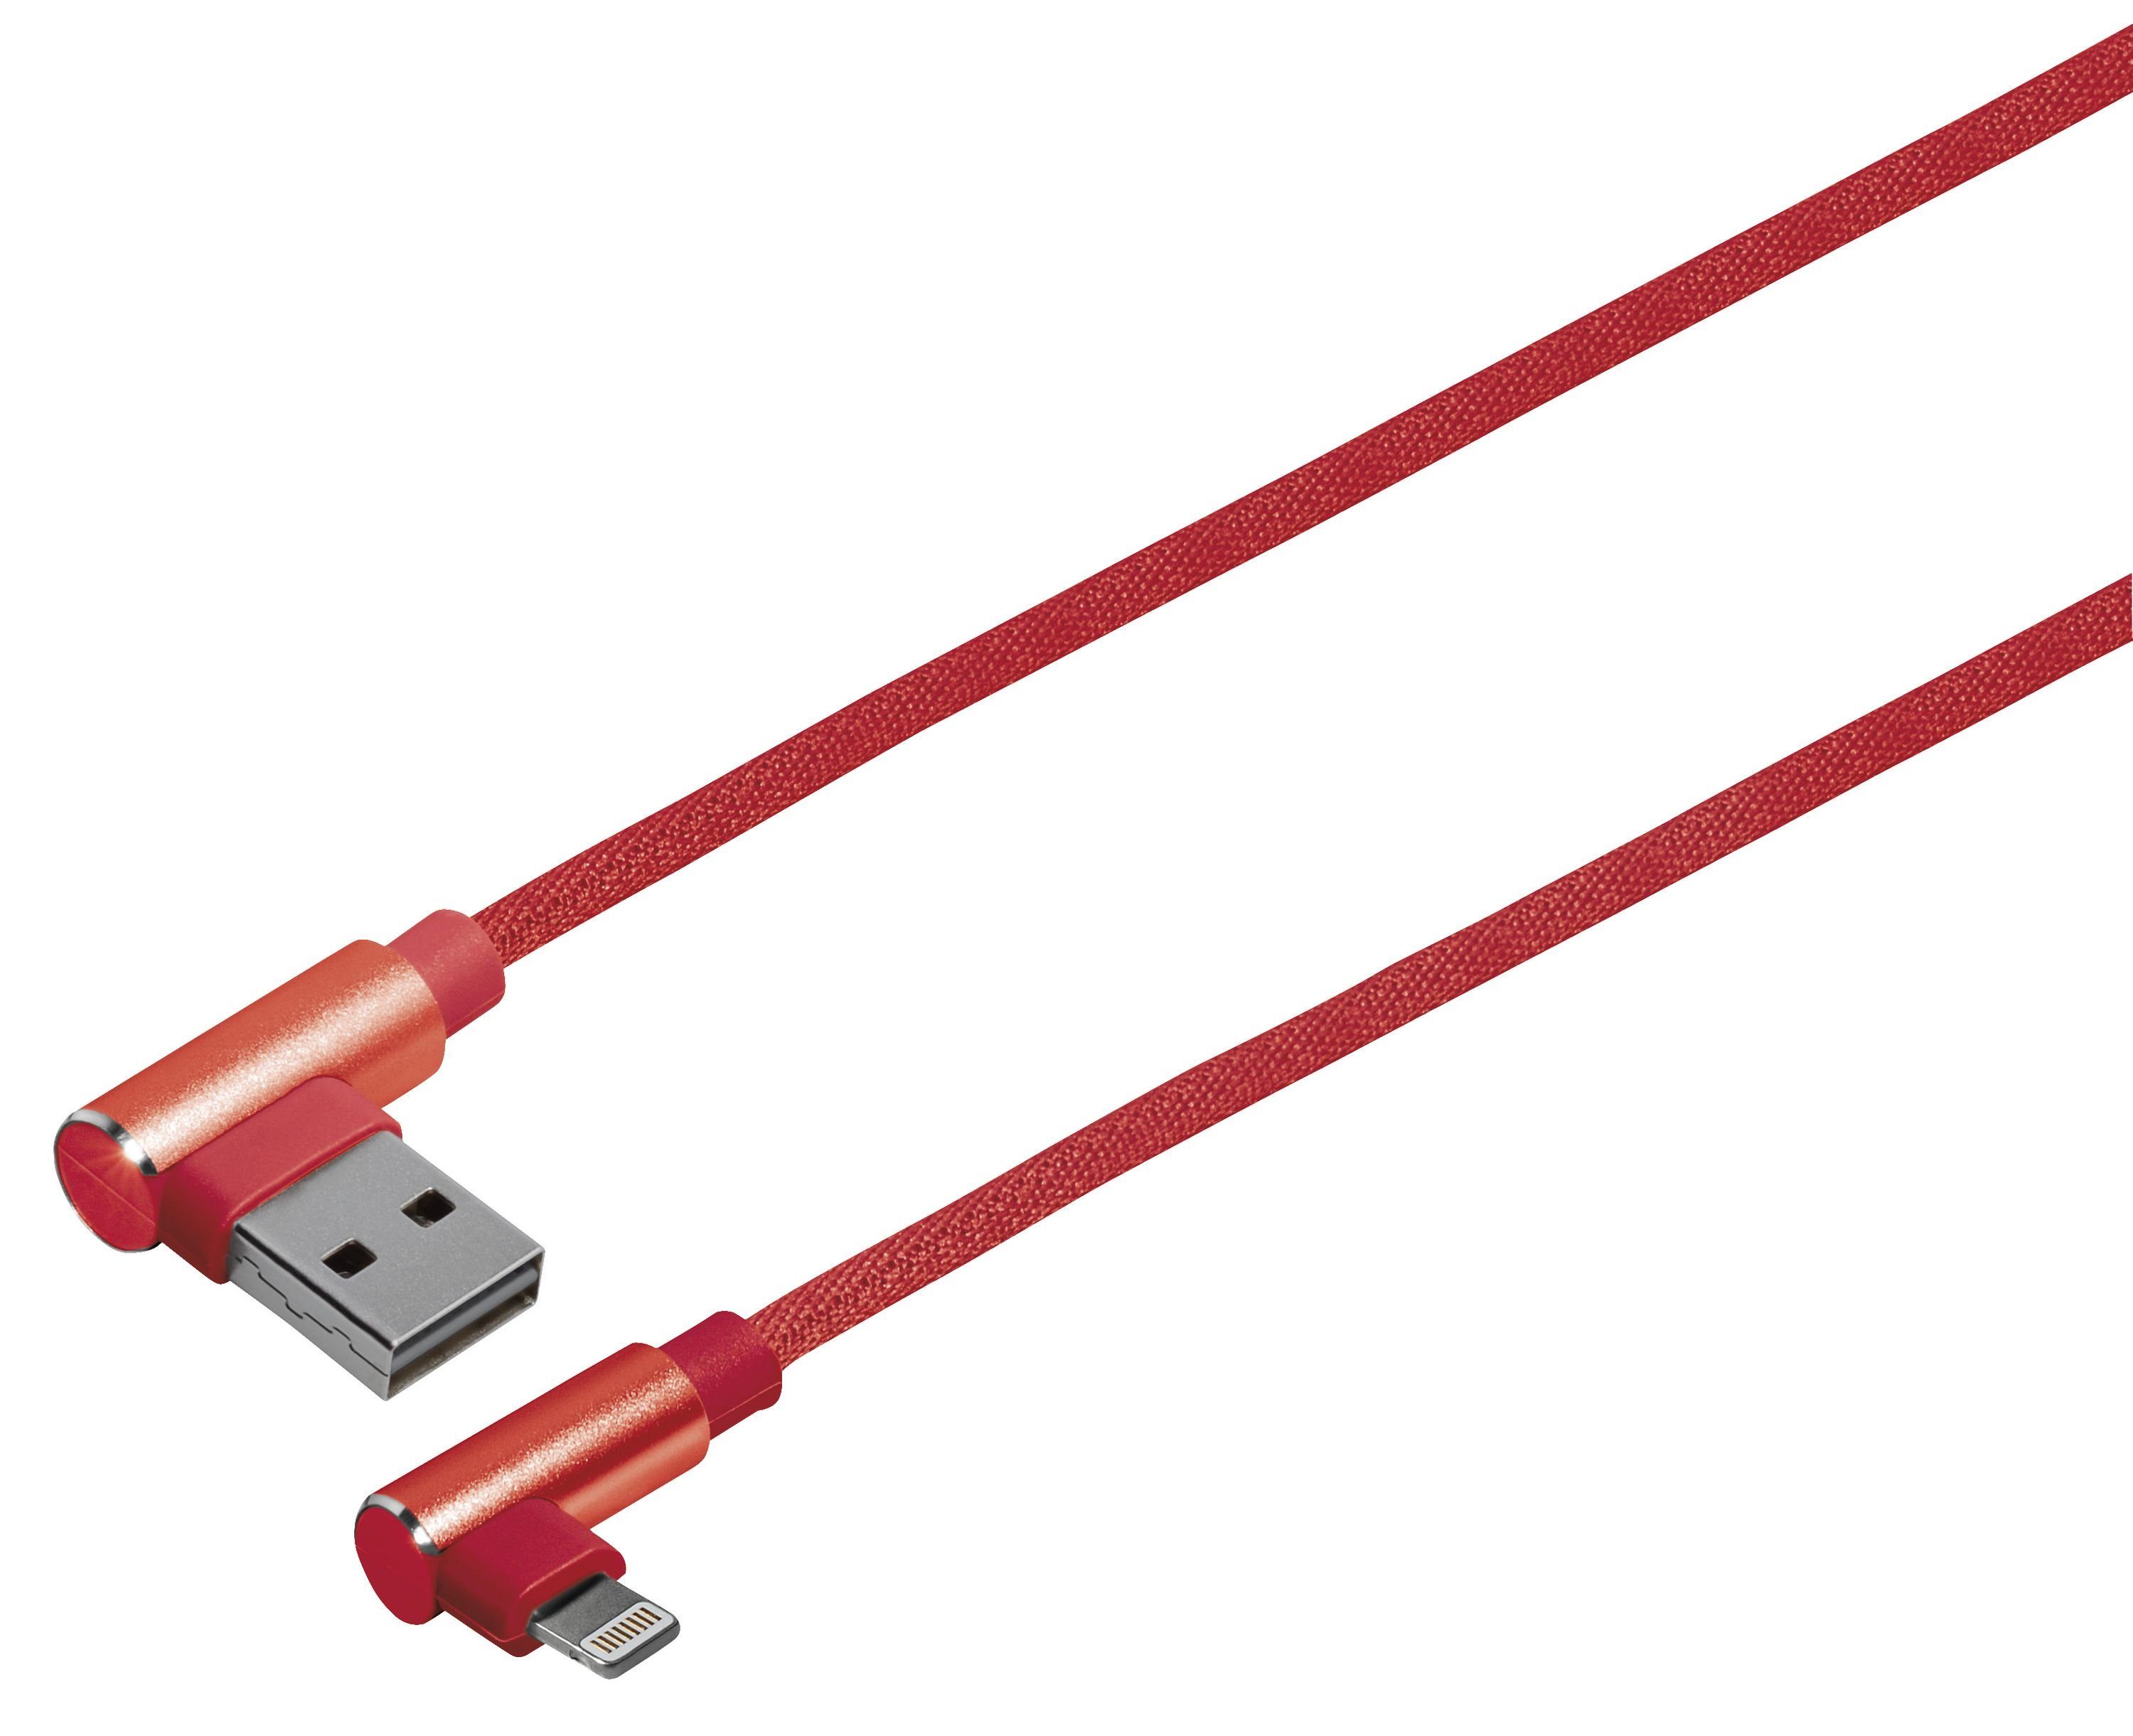 Maxtrack Smartphone-Kabel, Typ Stecker: USB Typ A gewinkeltLightning  gewinkelt, (100 cm), Hochflexibles Verbindungskabel für iPhone, iPad, iPod  (M 7 RL)